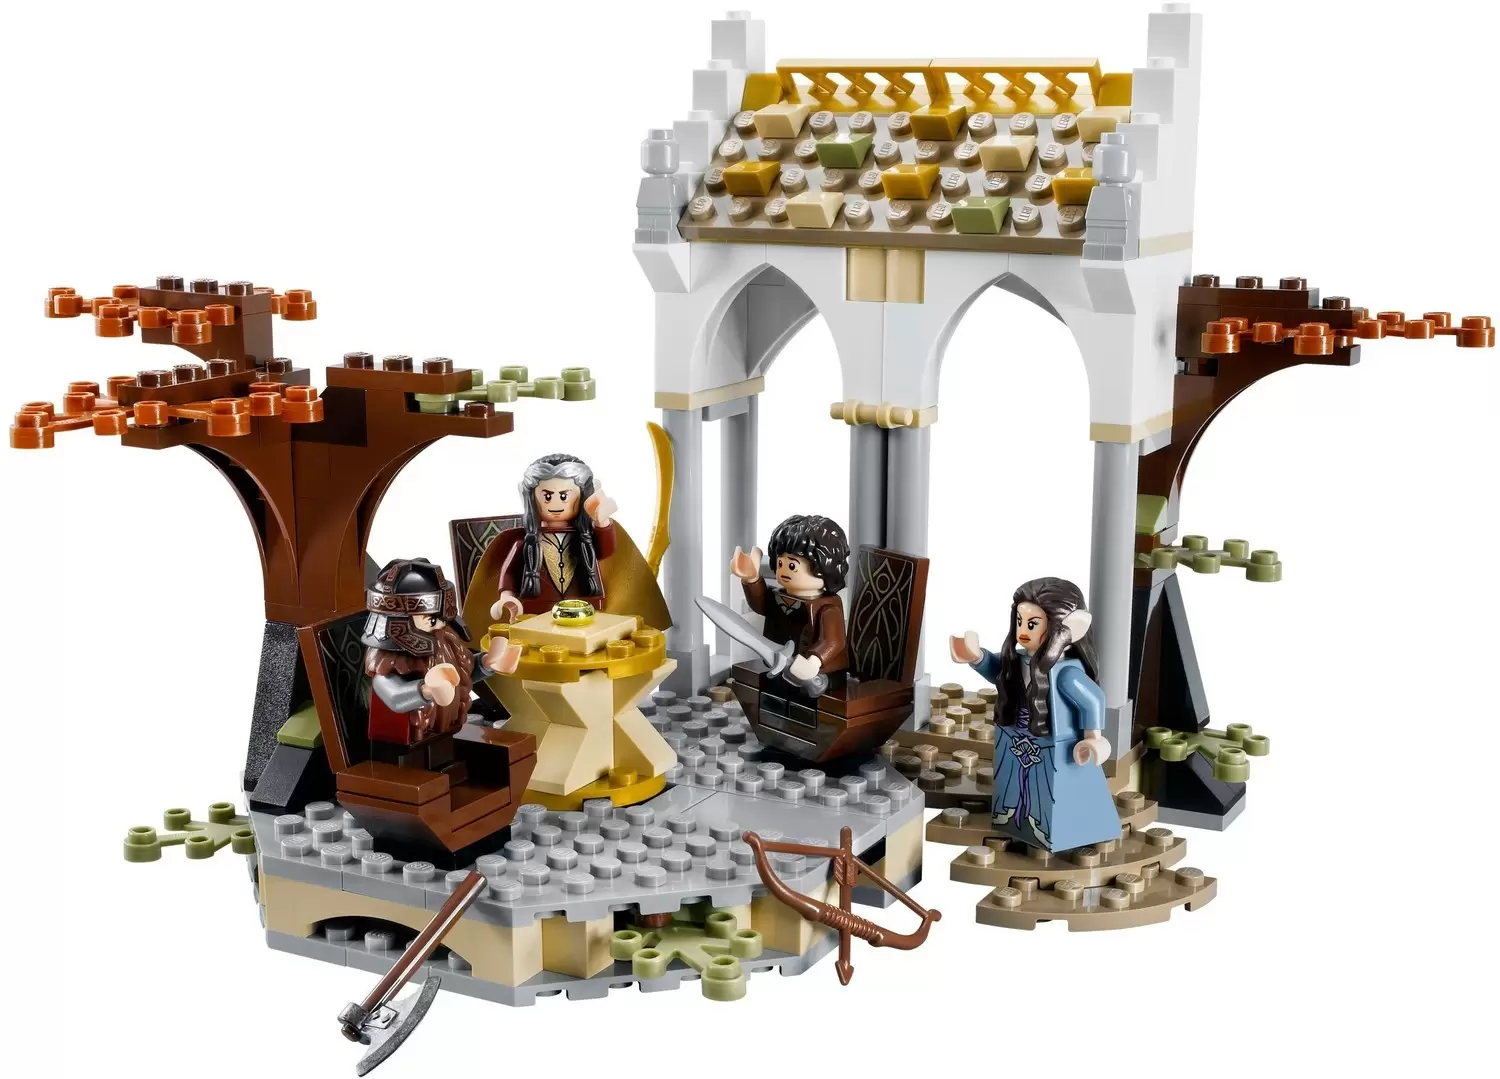 LEGO Le Seigneur des Anneaux - The Council of Elrond